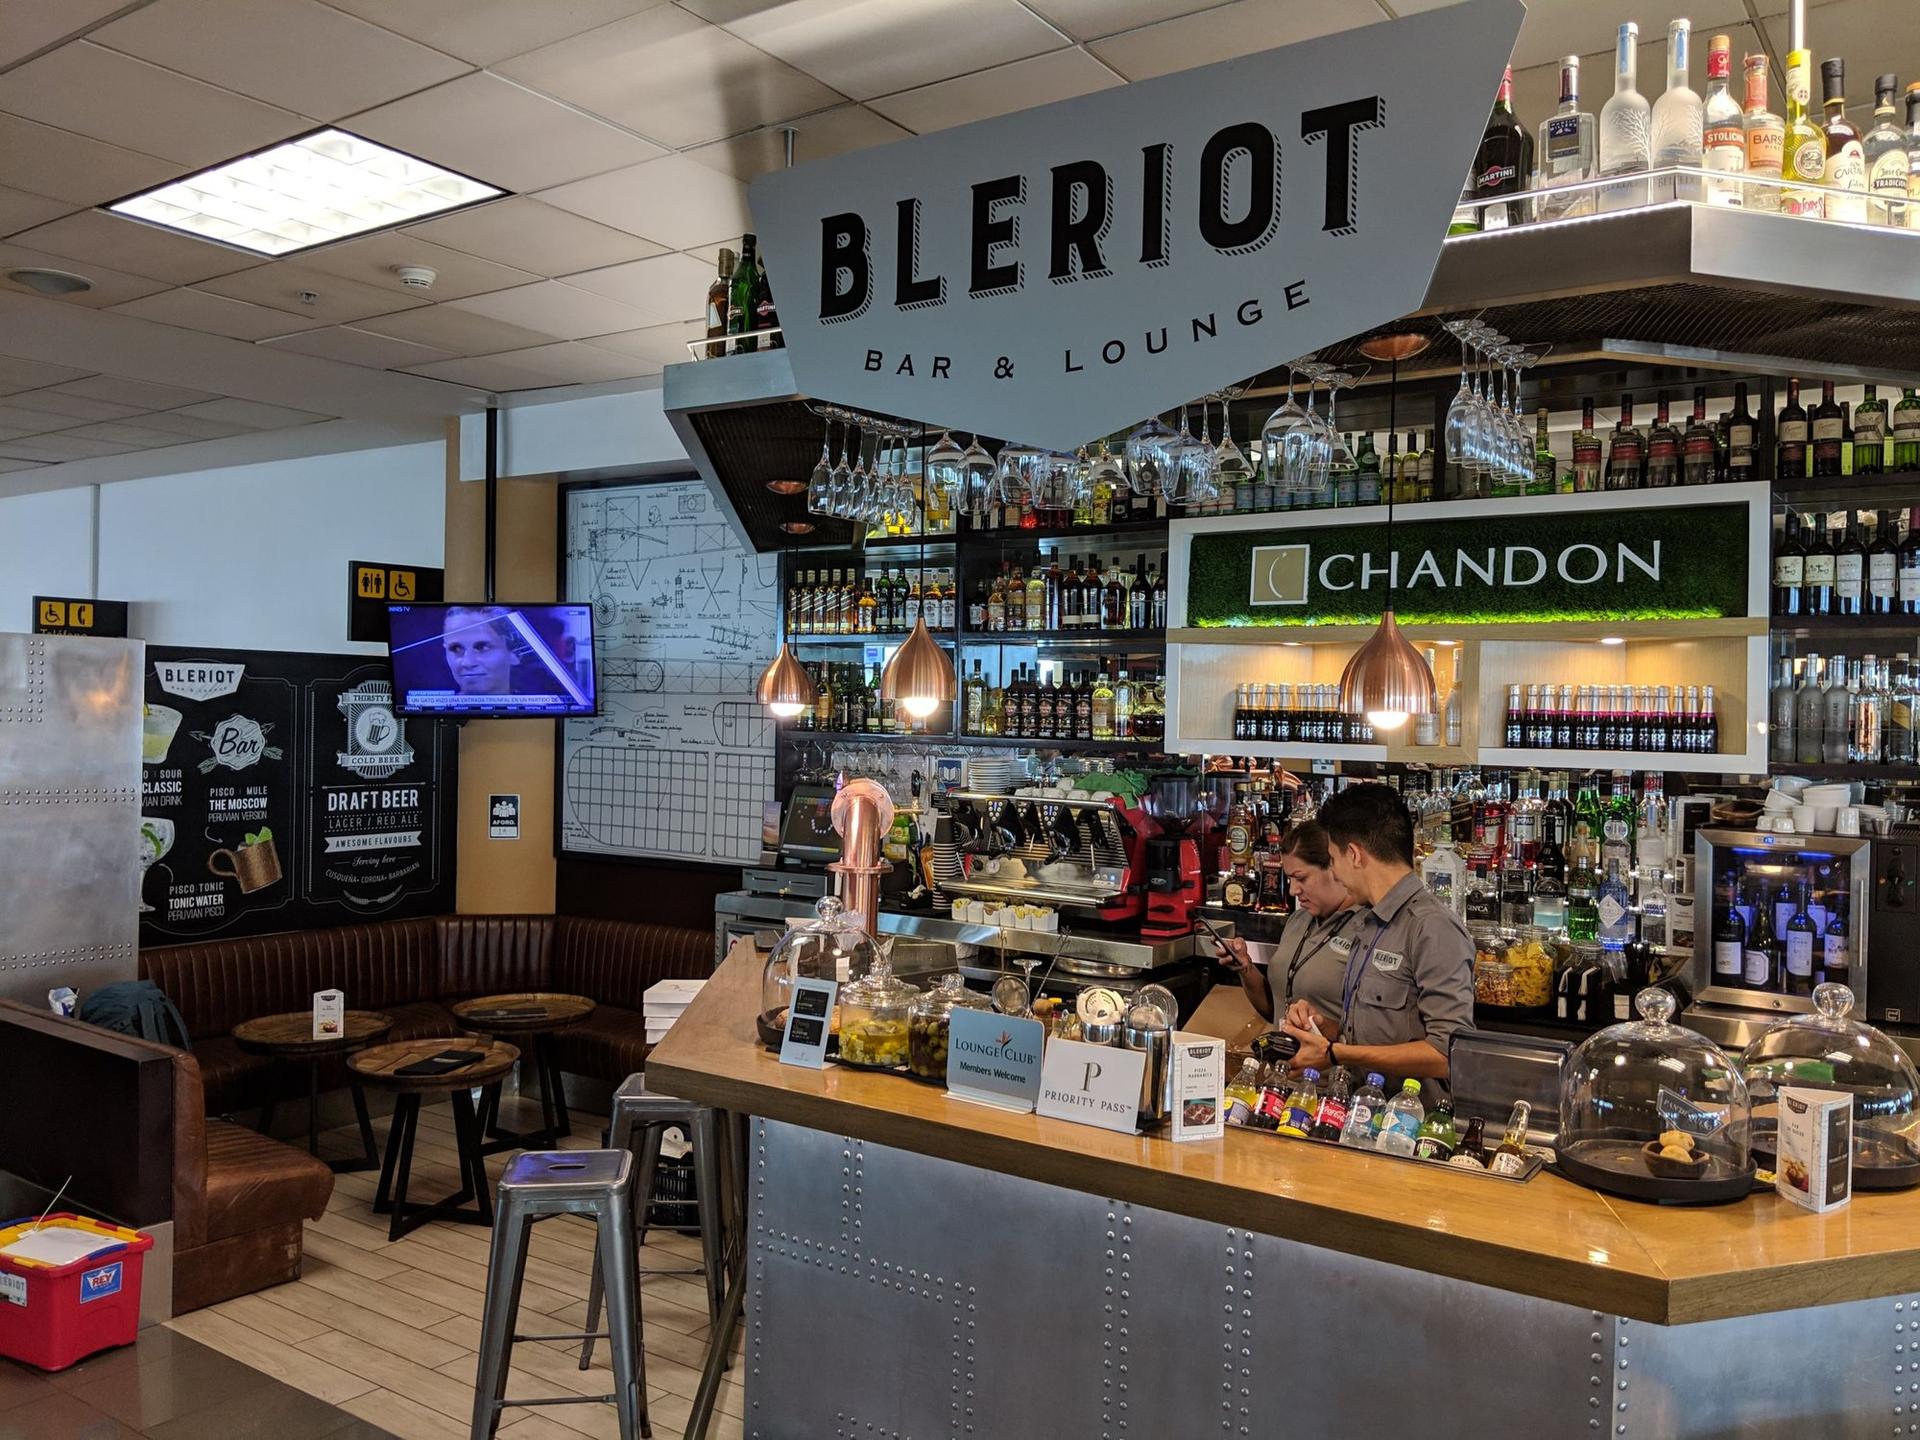 Bleriot Bar & Lounge image 2 of 10